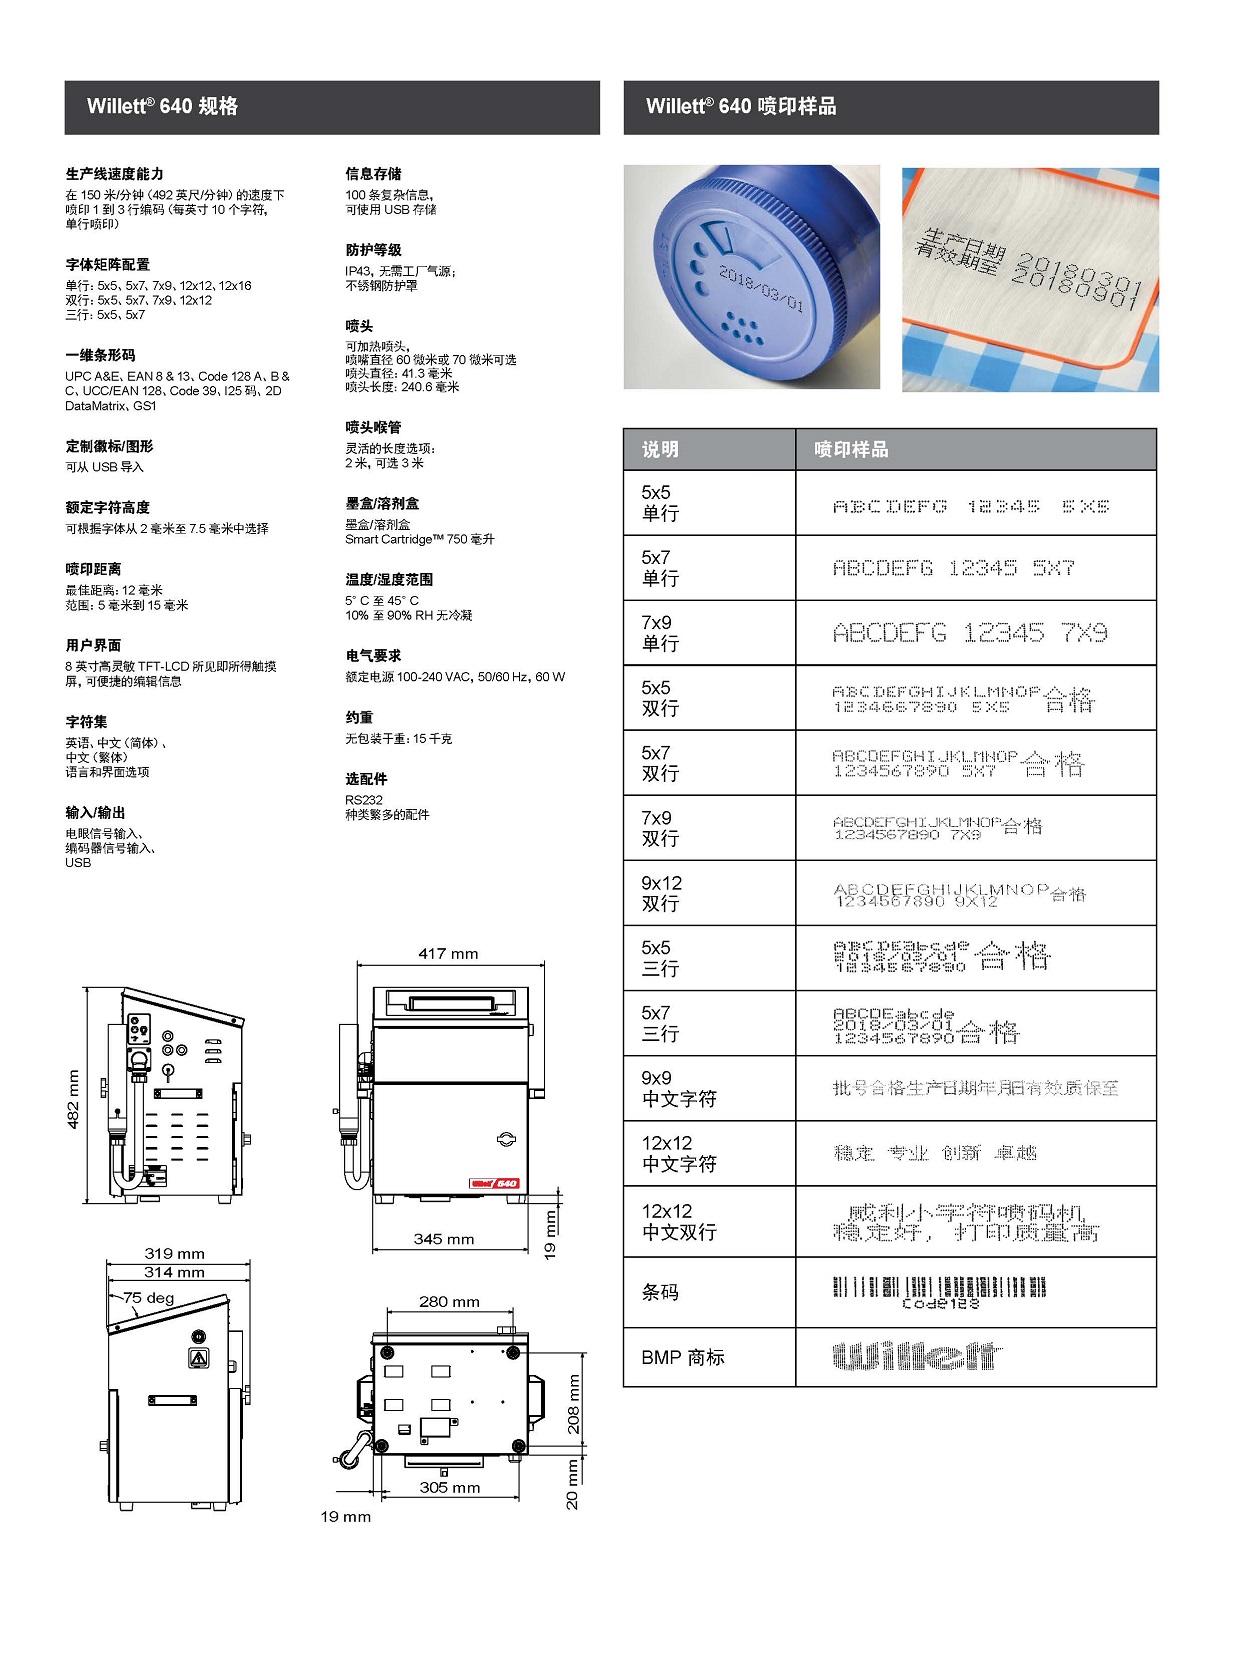 威利640产品手册 中文_页面_4.jpg